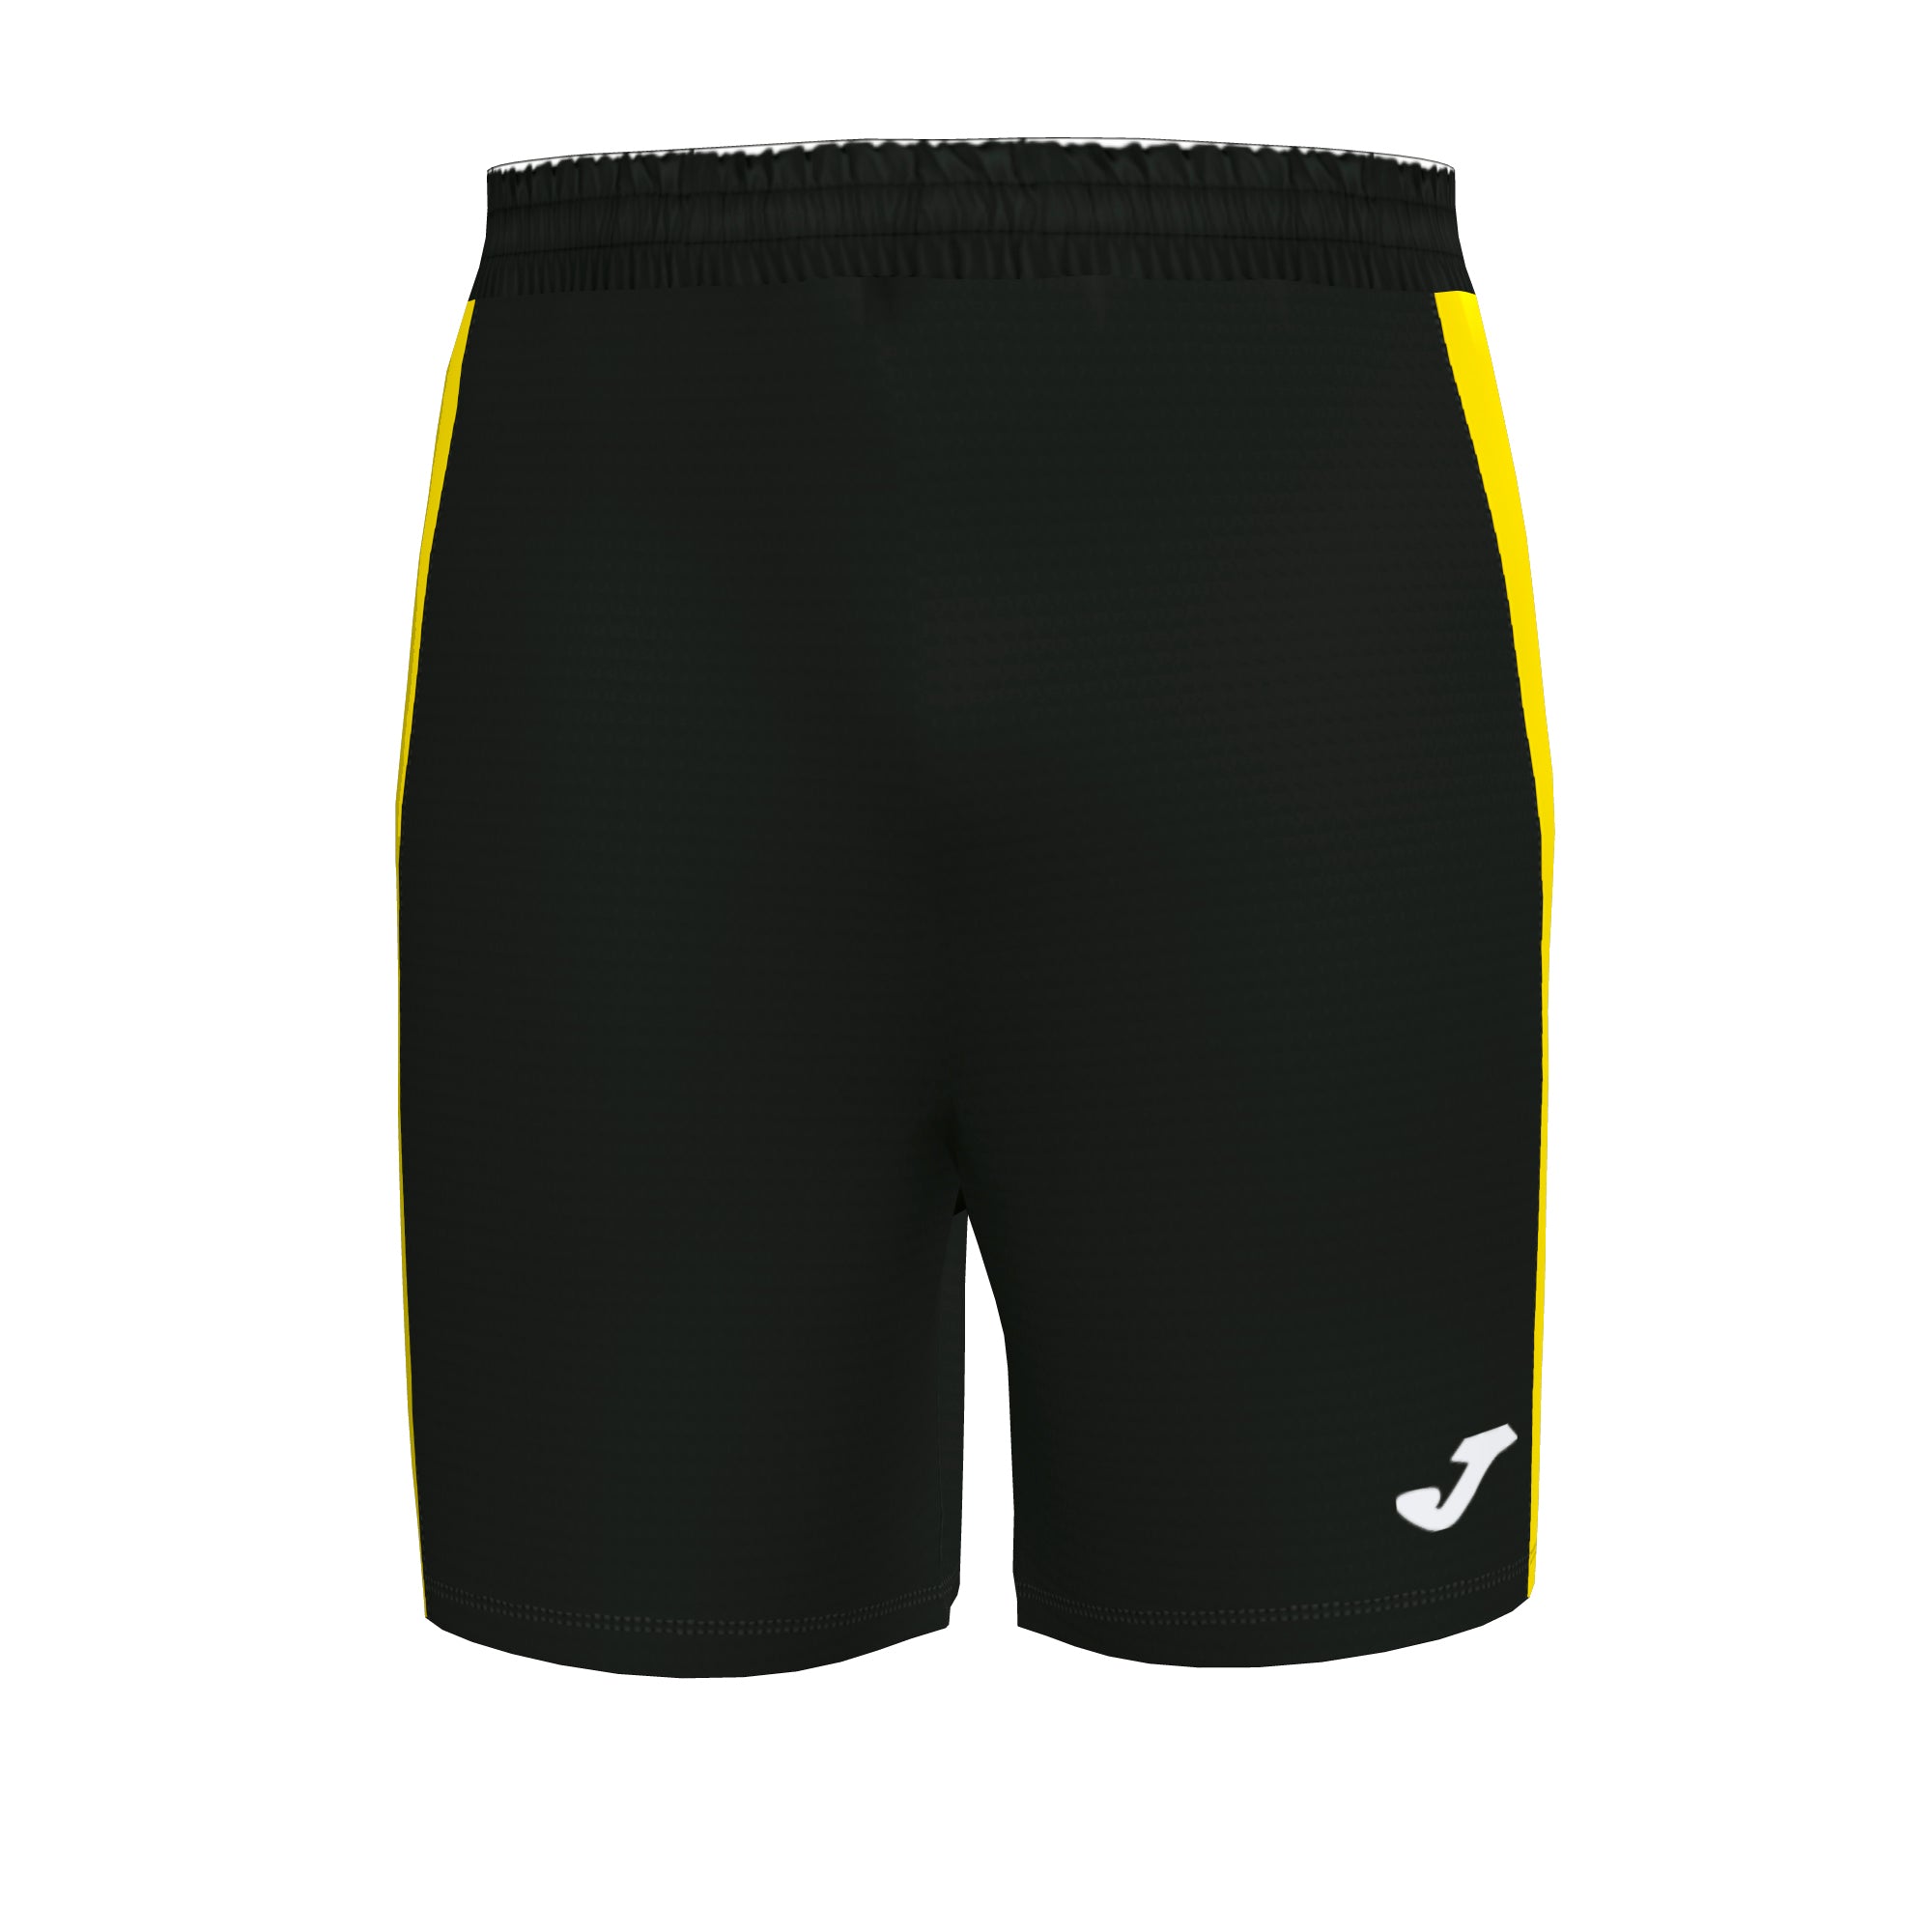 Joma Maxi Short - Black/Yellow